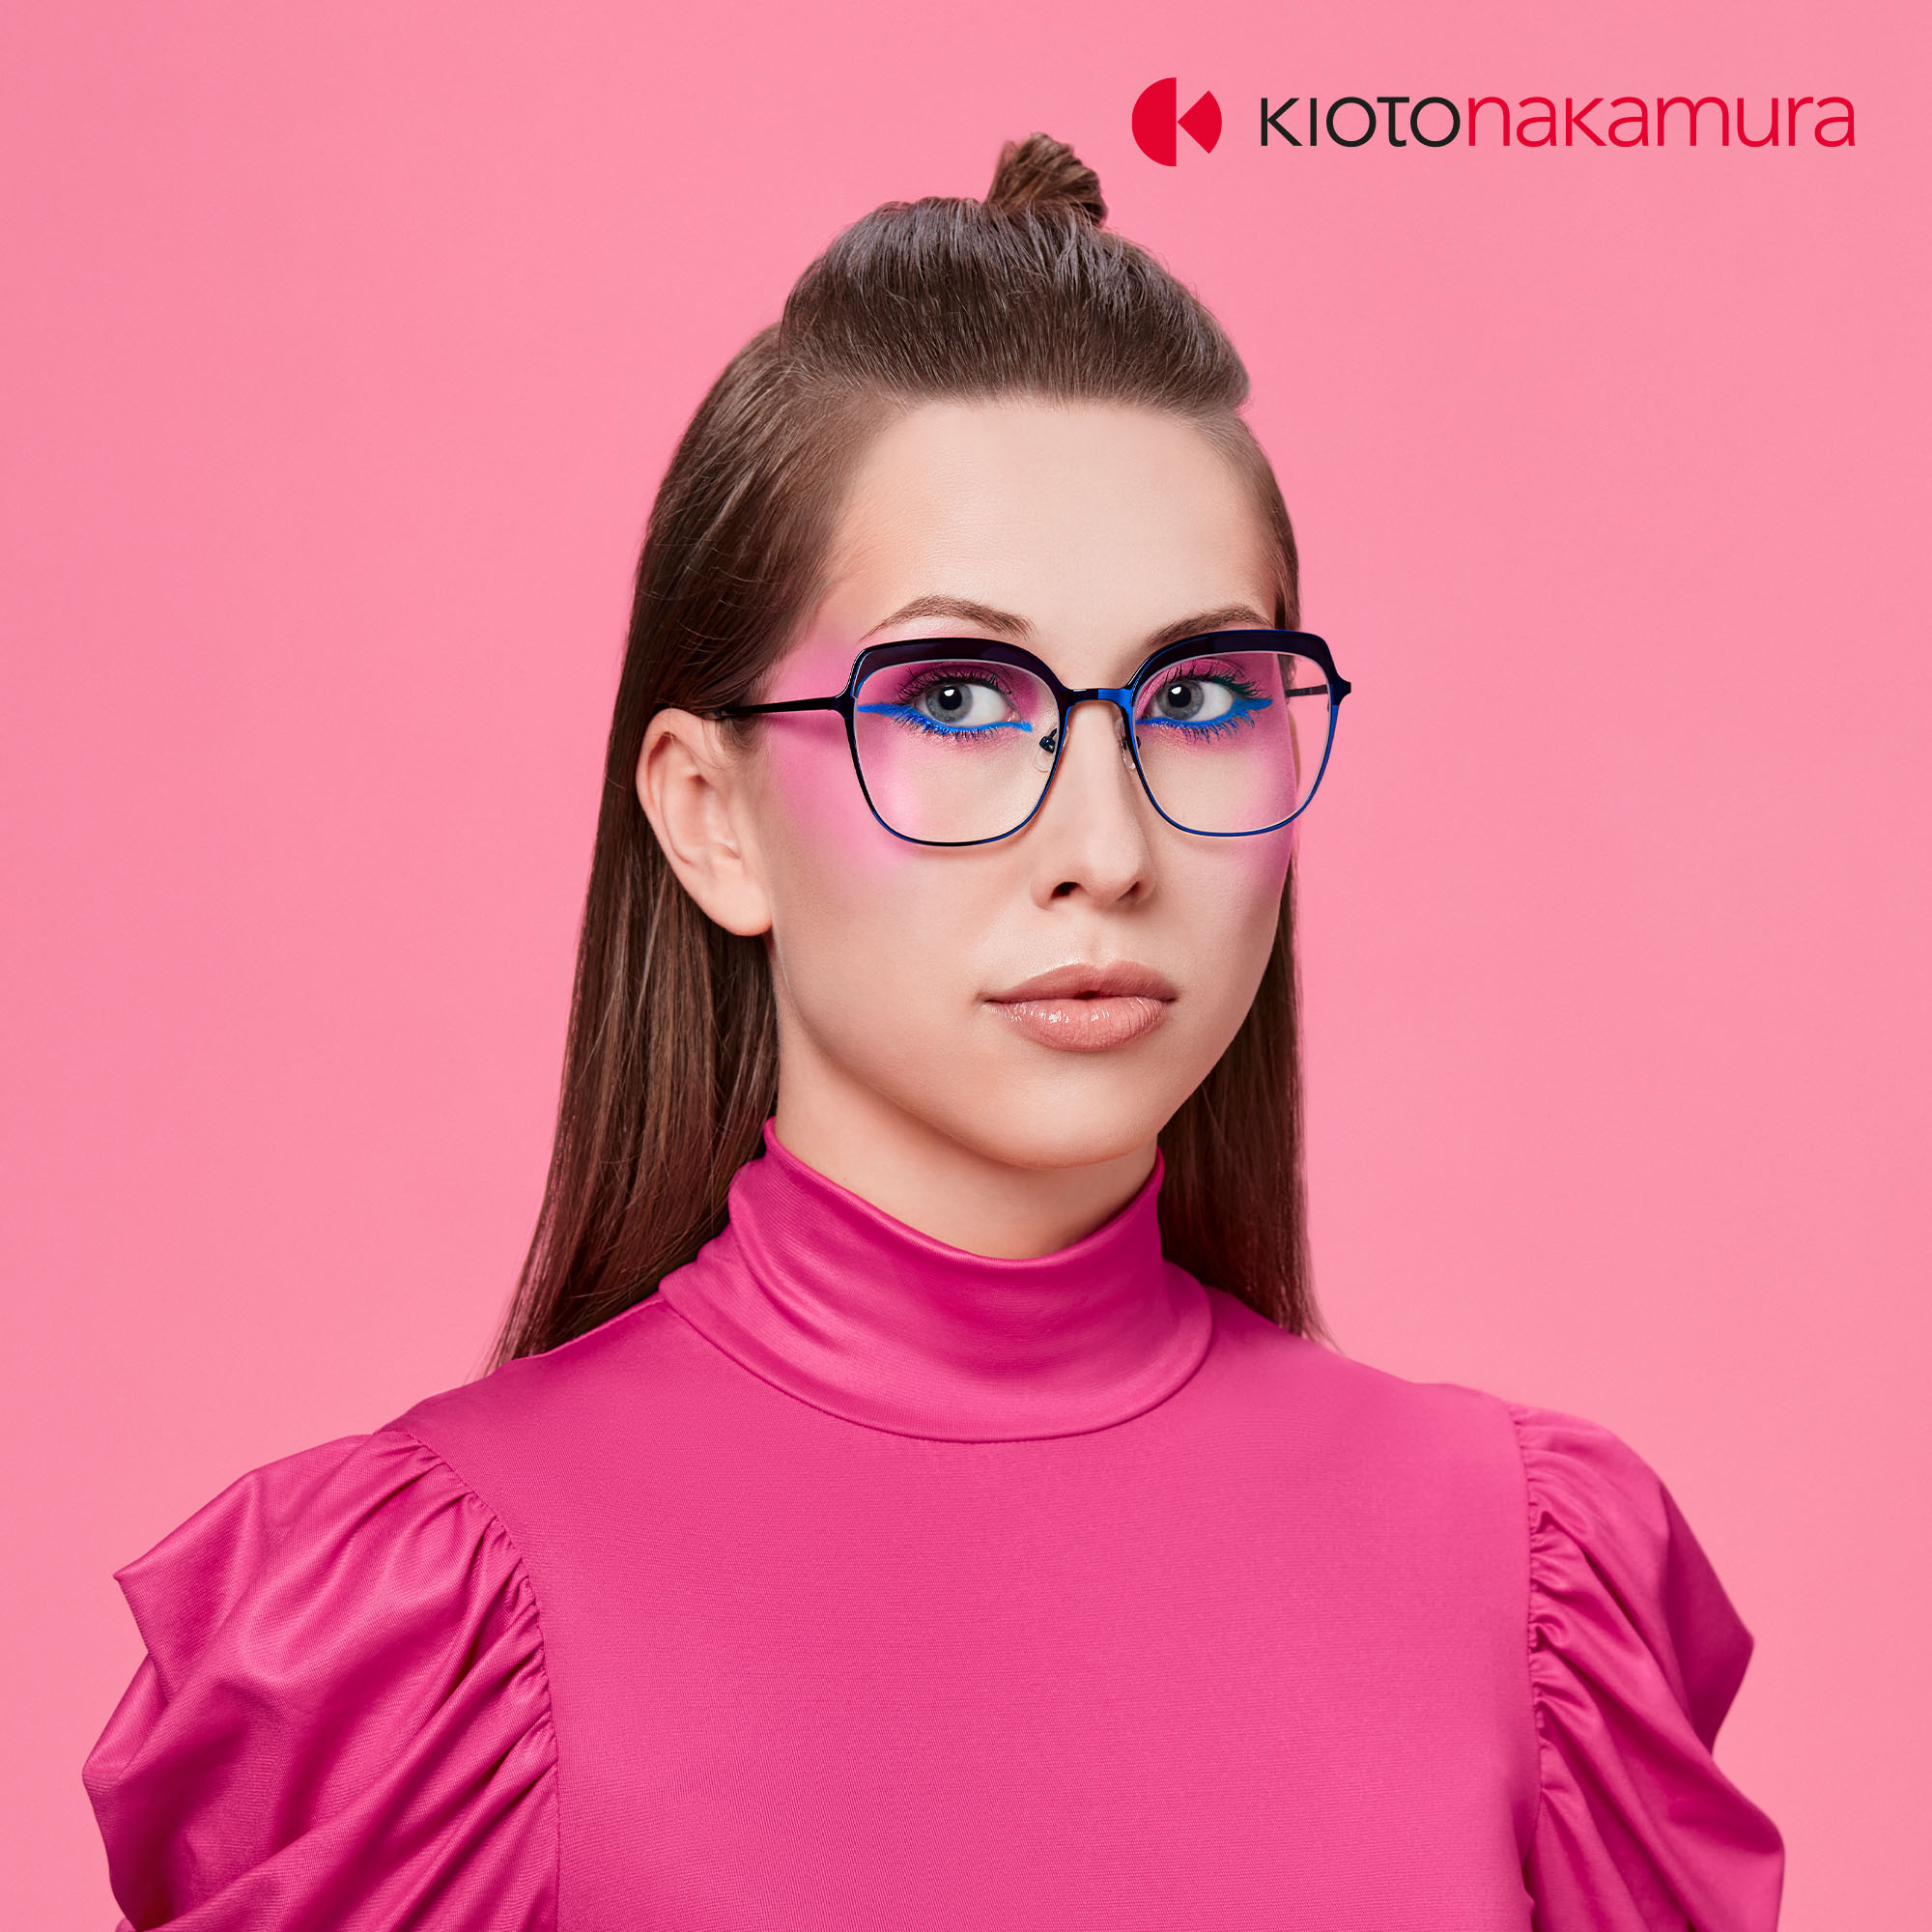 Junge Frau in grellen Farben mit Brille von kiotonakamura